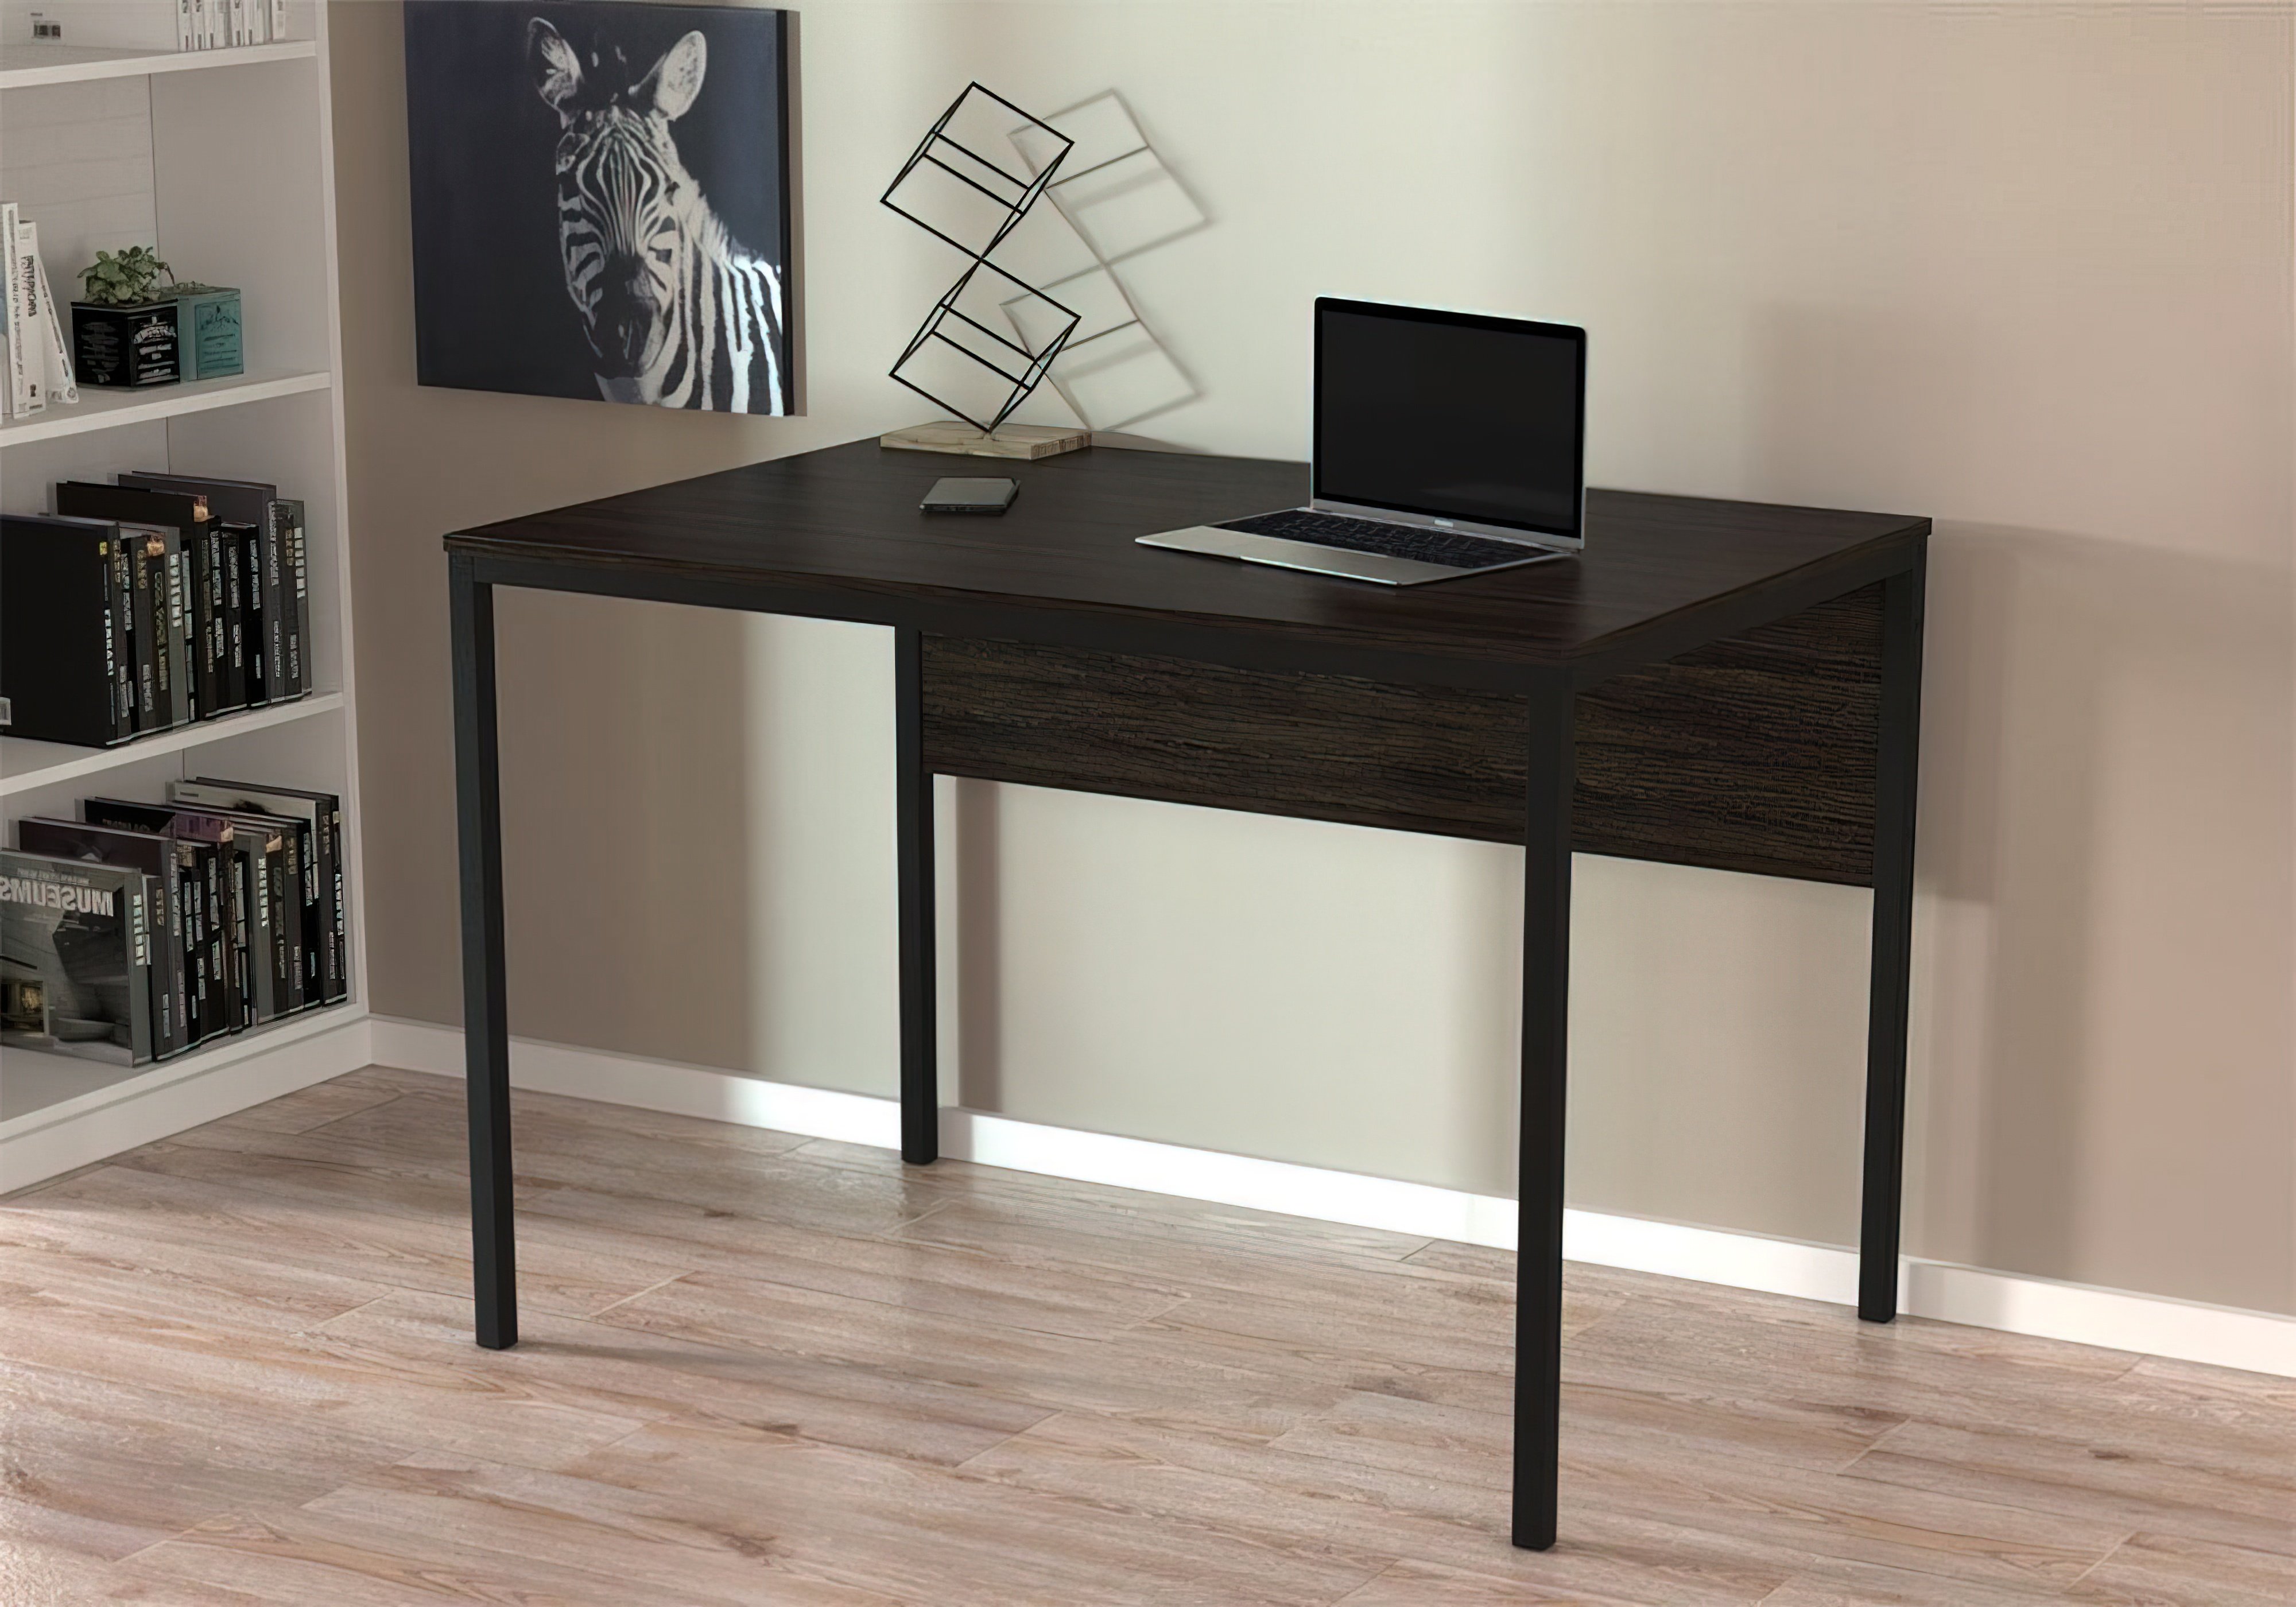  Купить Офисные столы Стол офисный "L-2p mini" Loft Design